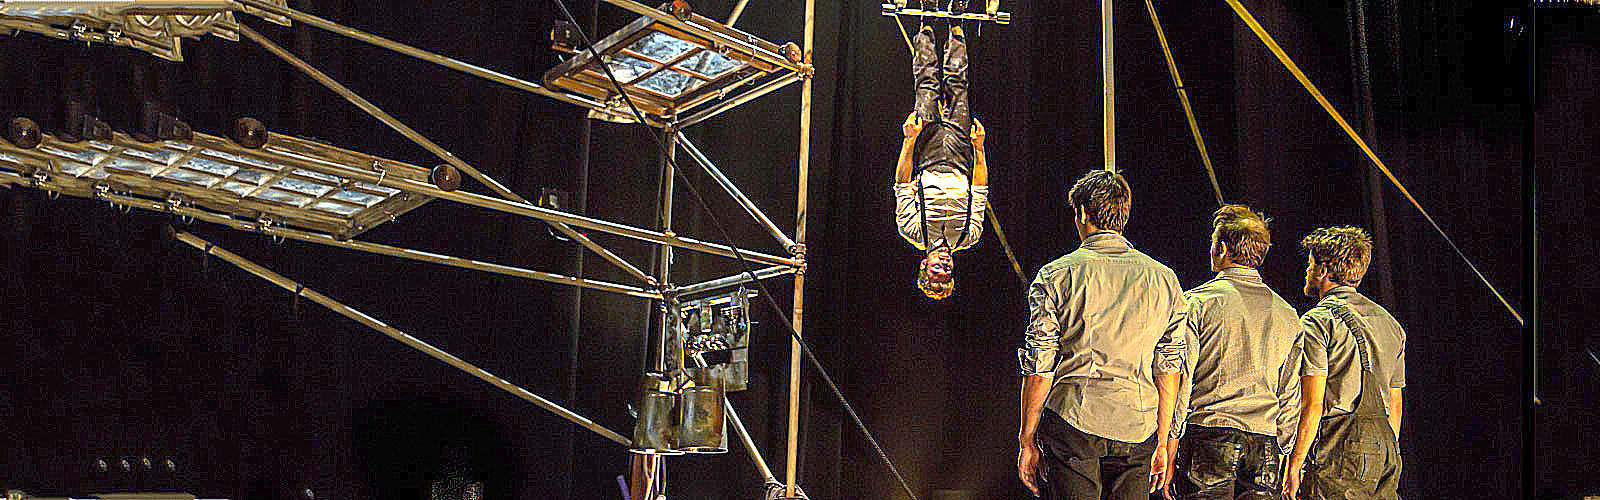 La “Machine du Cirque” va in scena sabato sera al Ristori. Poetico intreccio di energia, comicità, ingegno e musica